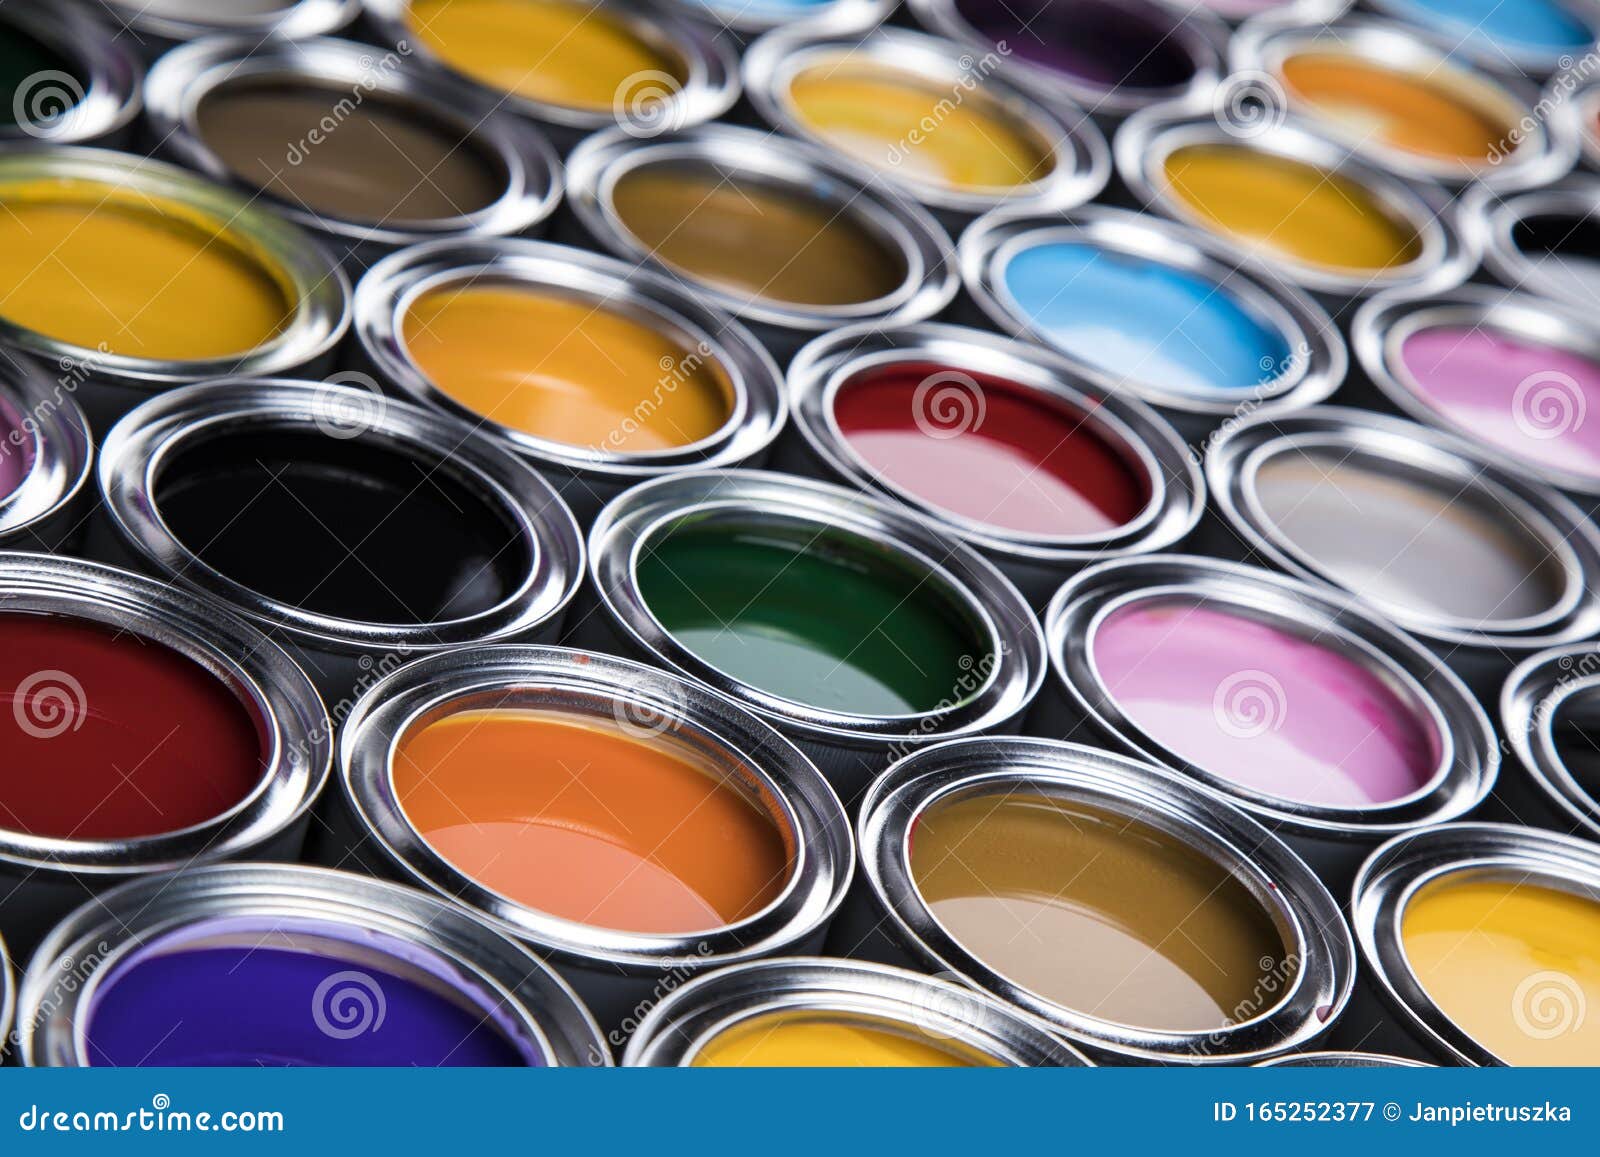 paint cans palette, creativity concept